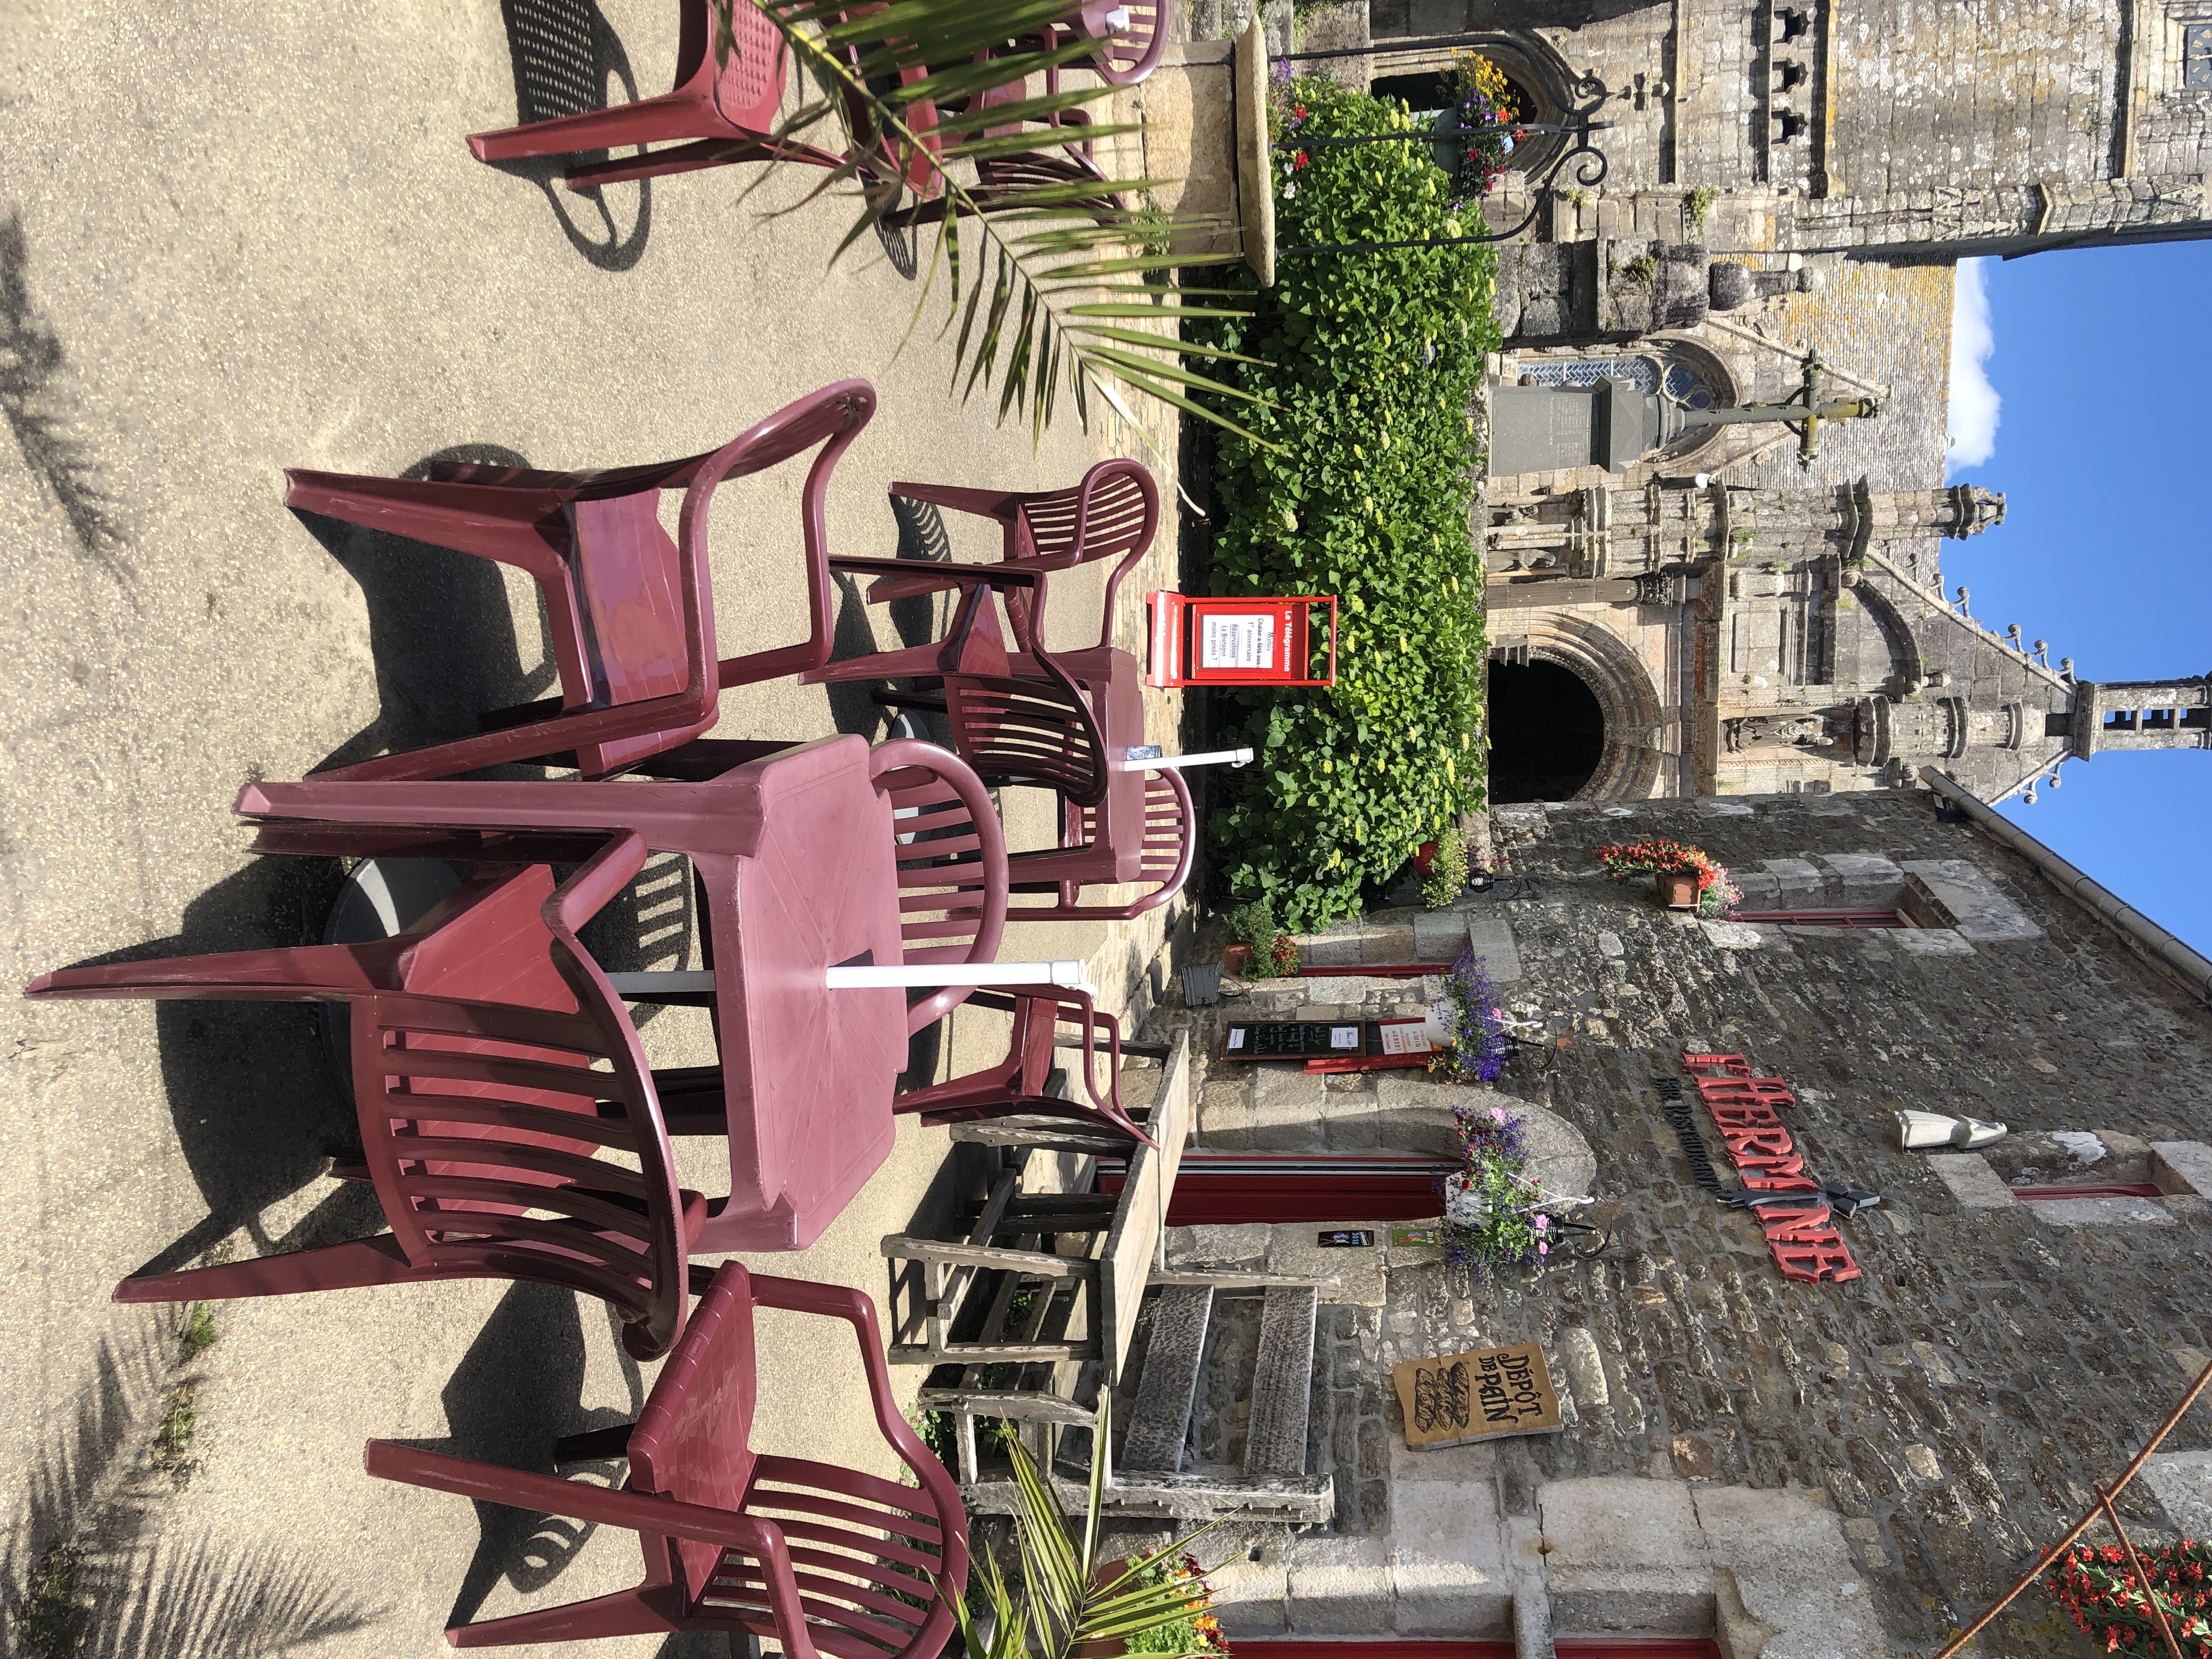 Pour départ à la retraite.
Dans un joli petit village de Bretagne, sur route départementale 30.
A 20 mn des plages du Nord Finistère(Plouescat, Cléder) et à 30 mn de Roscoff  ou BREST, une spectaculaire bâtisse datant de 16èmè siècle entièrement rénovée avec soins et  respectant l'architecture historique, elle est accolée à l'enclos paroissial.
Ce bar restaurant  recevant jusqu'à 90 couverts en deux salles hors saison, sera vous charmer. Un potentiel extraordinaire et un boulevard de possibilités
De grands parkings pour vous accueillir.
En été, le circuit des enclos paroissiaux apporte une clientèle touristique et la terrasse de 40 couverts orientée  plein sud, vous garantissent une source de revenus non négligeable.
Ouvert du lundi au samedi midi fermé tous les soirs
5 semaines de congés
Appartement neuf de 3 chambres idéal pour une famille.
Affaire saine et rare. Petit loyer
A visiter absolument !!!